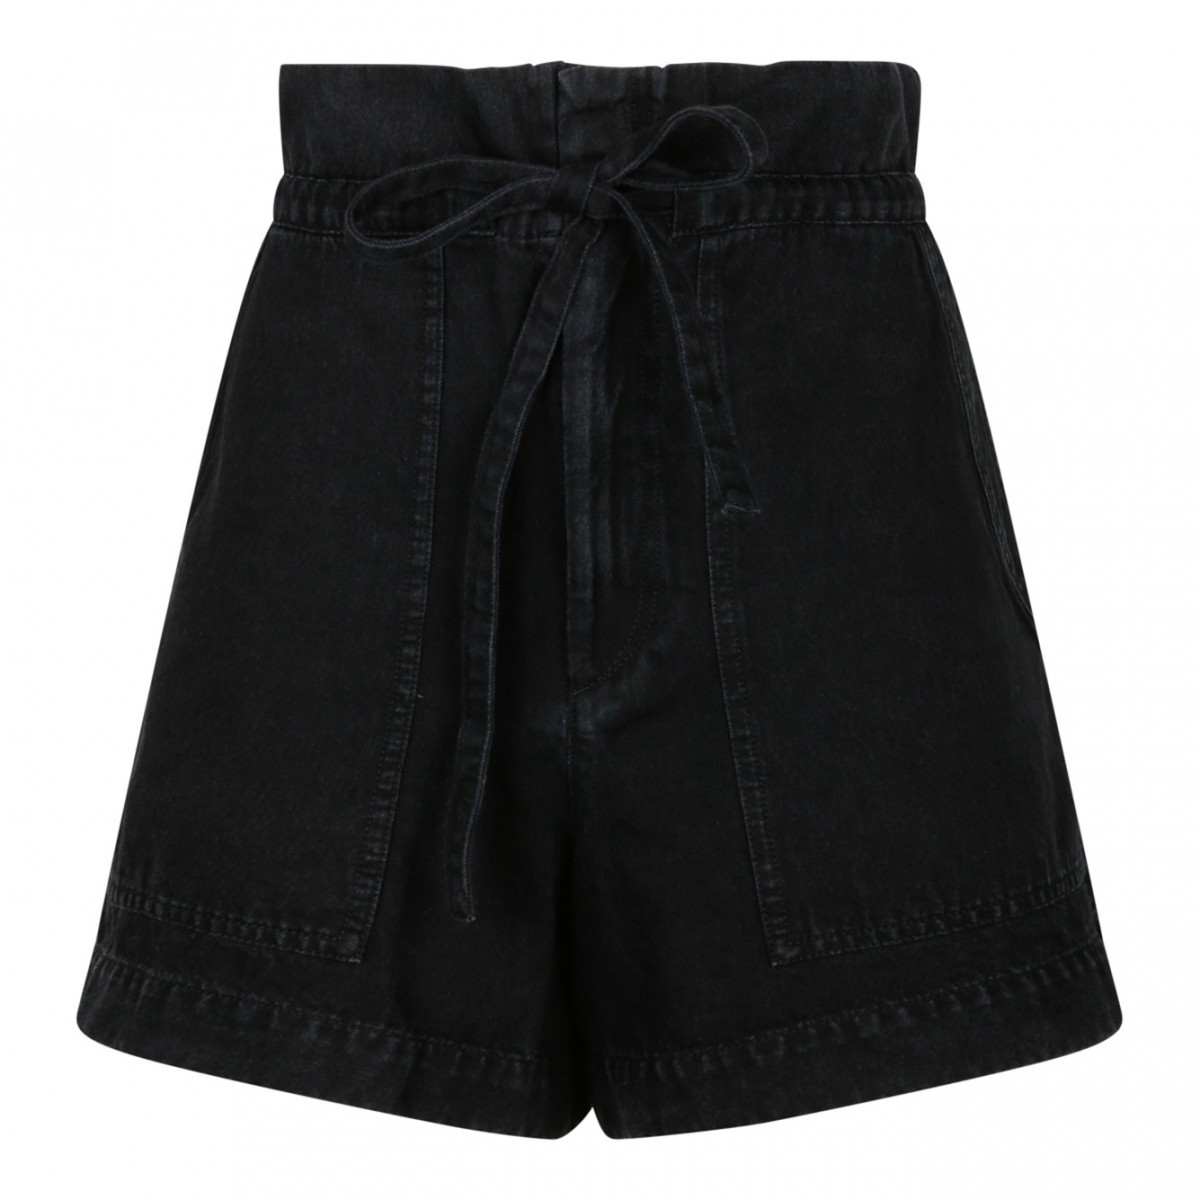 Ipolyte Black Denim Shorts